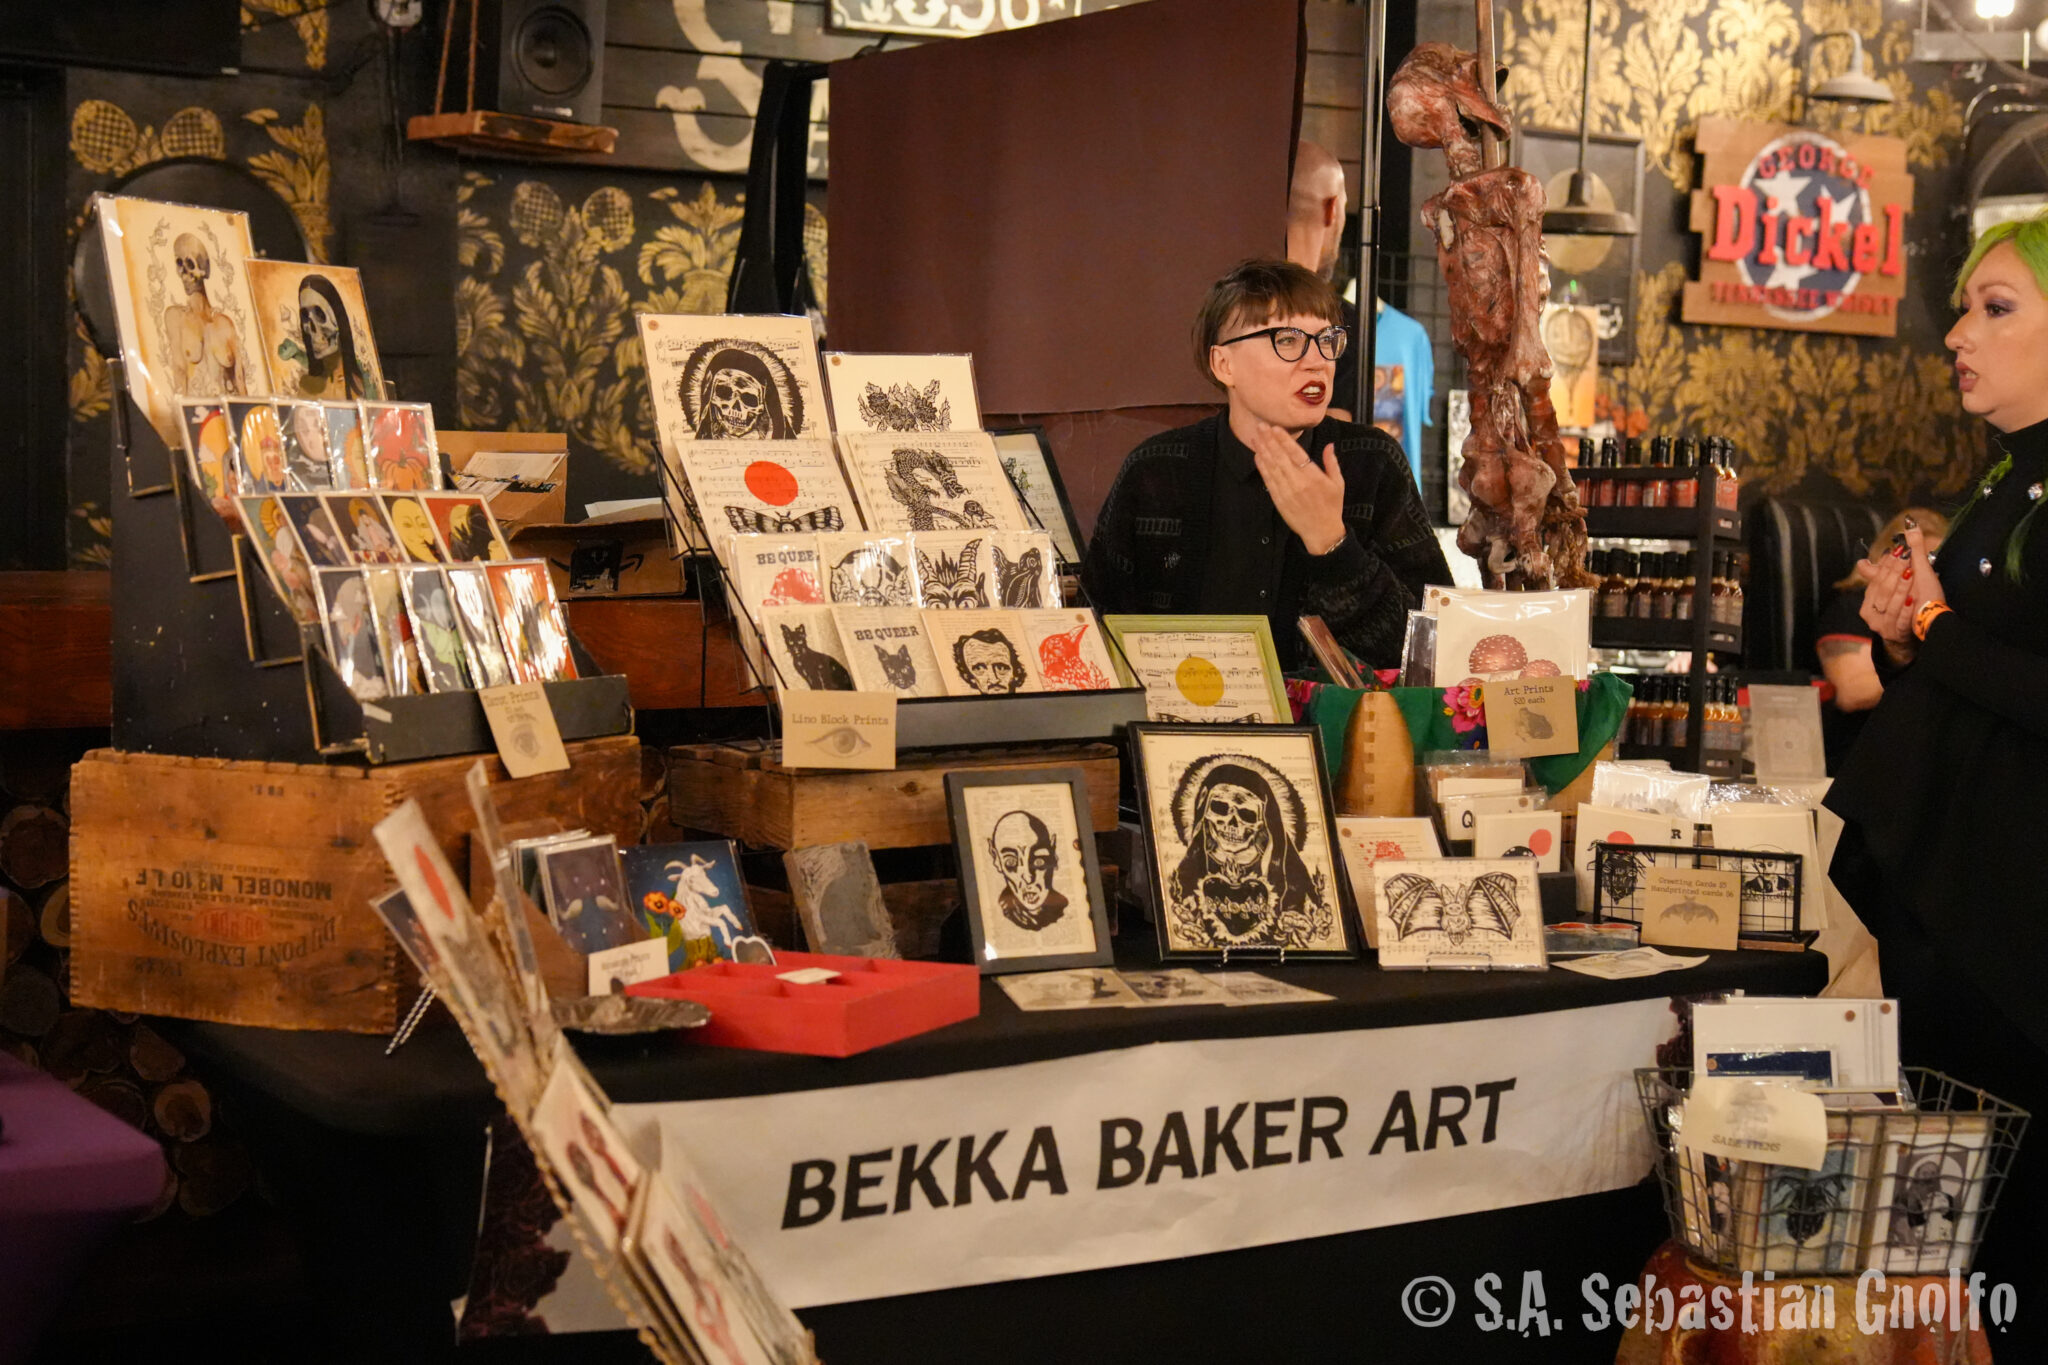 Daywalker Bazaar vendor: Bekka Baker Art